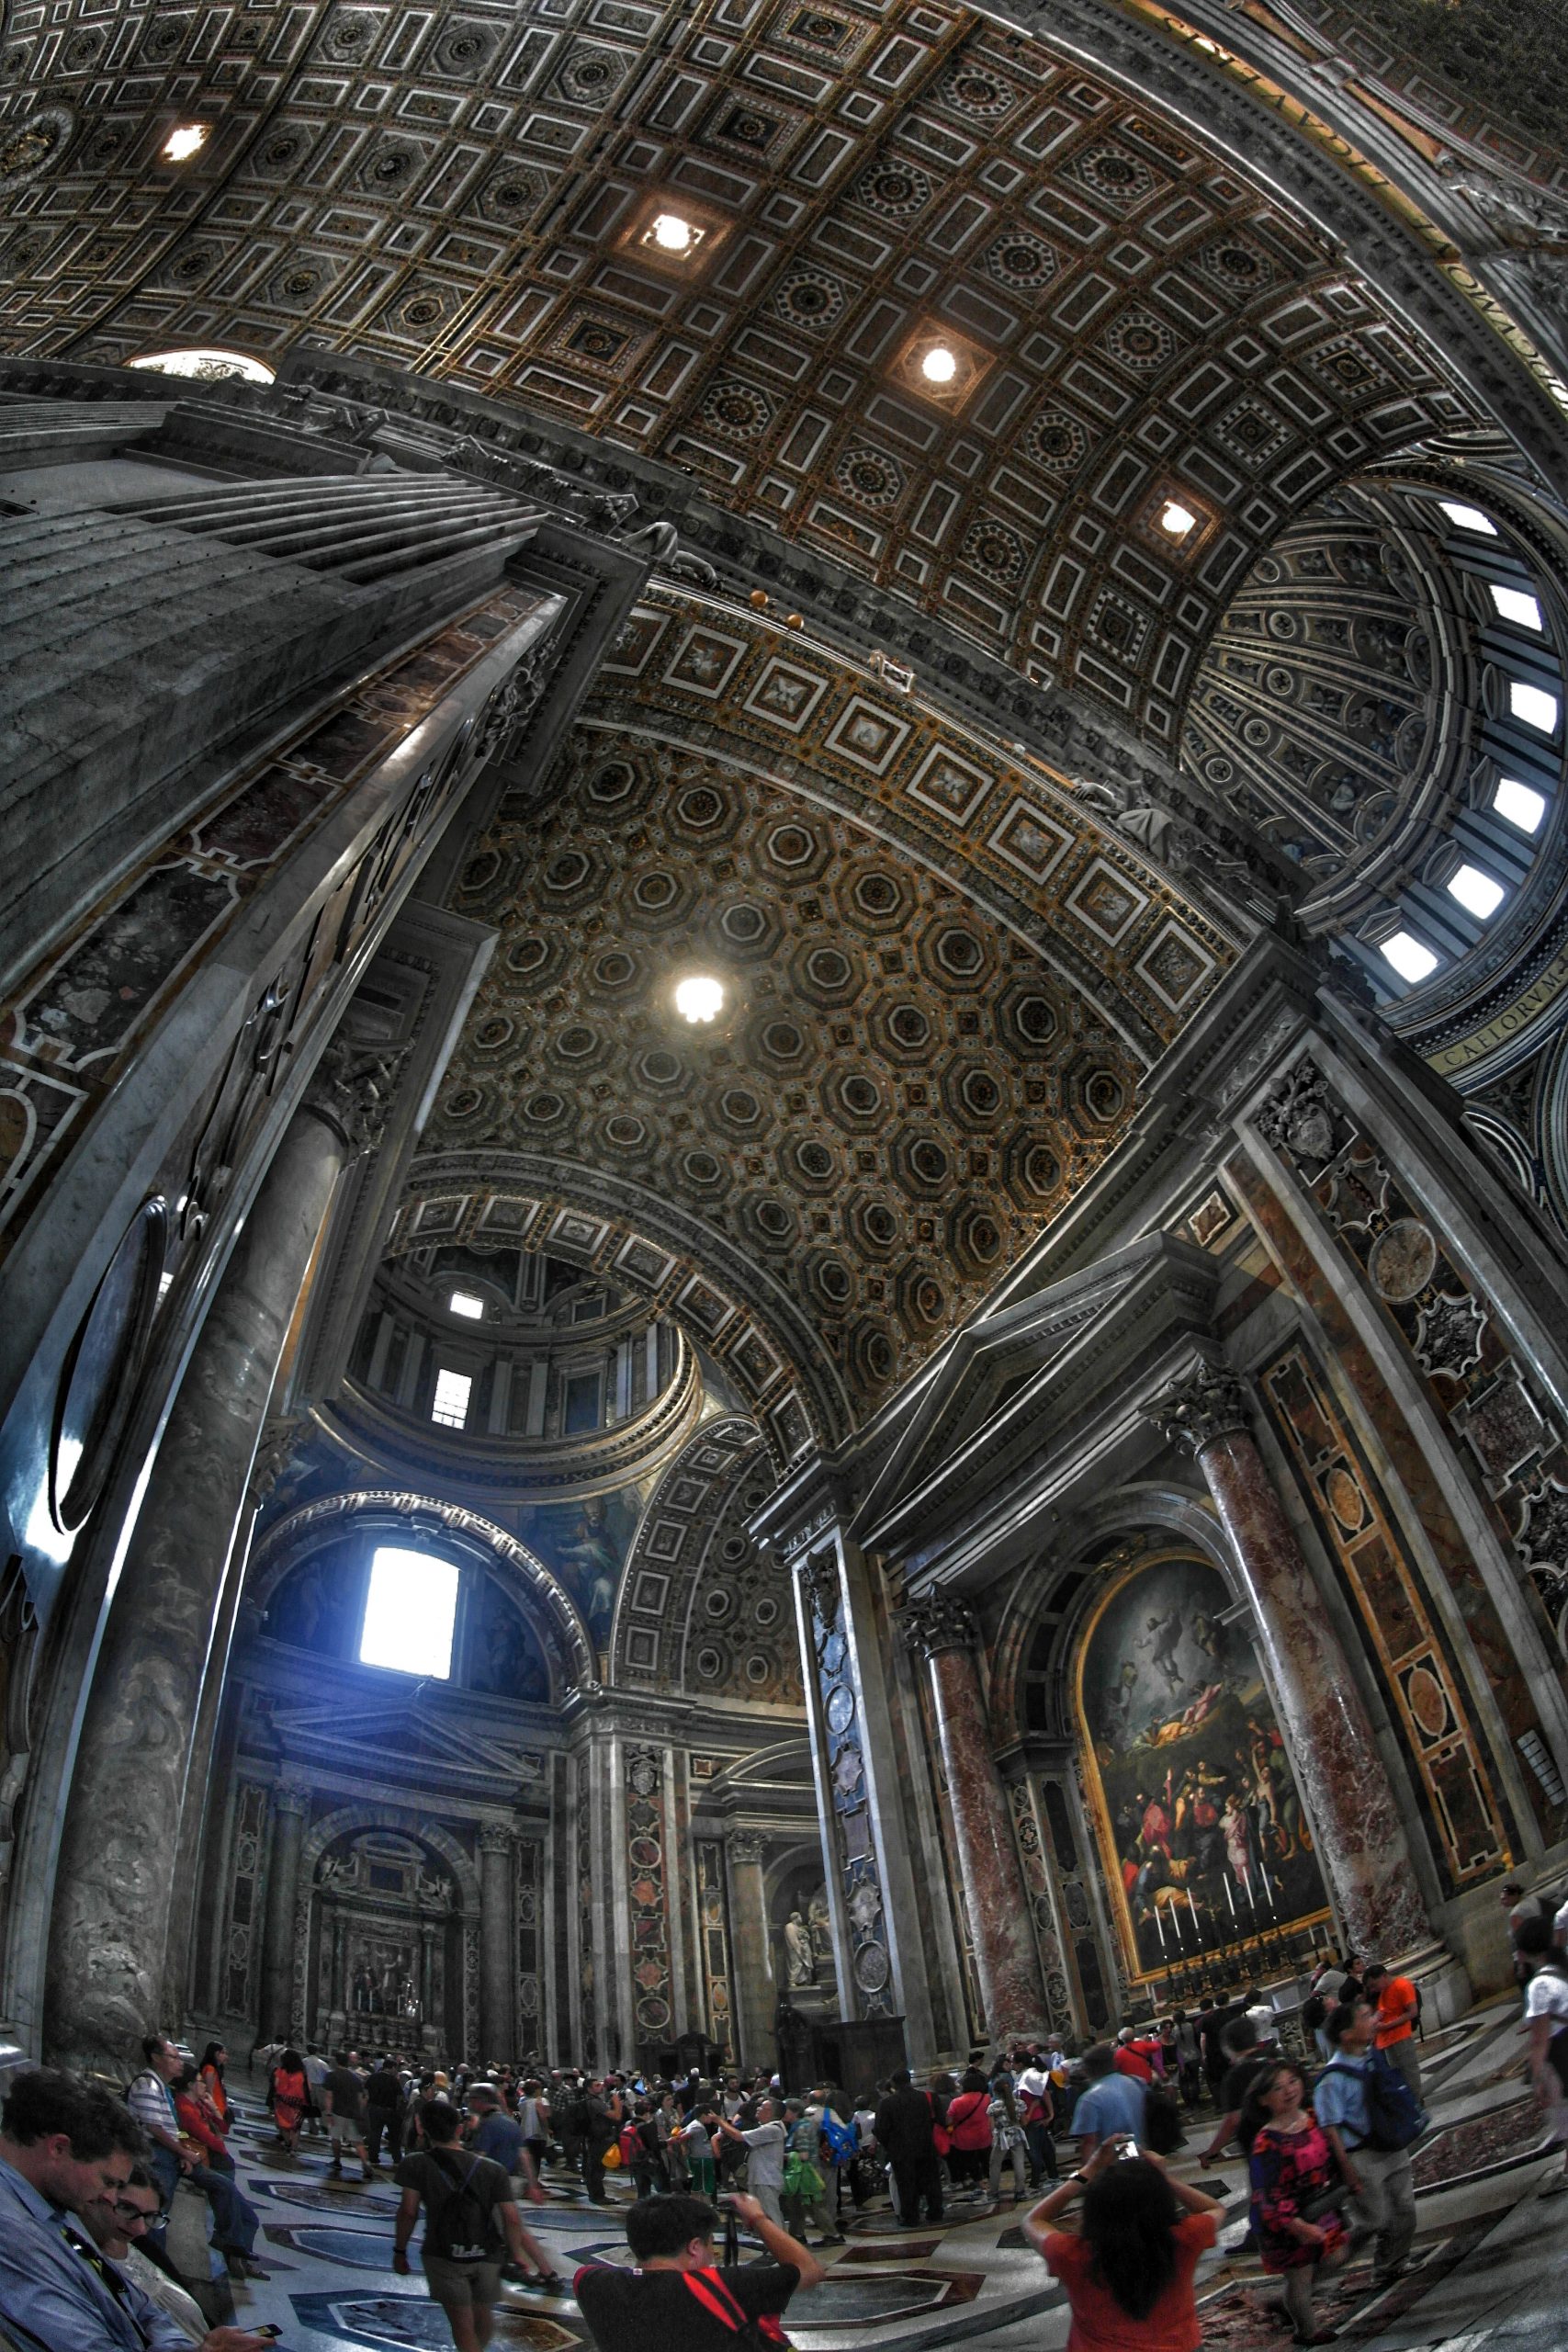 St. Peter’s Basilica in Vatican